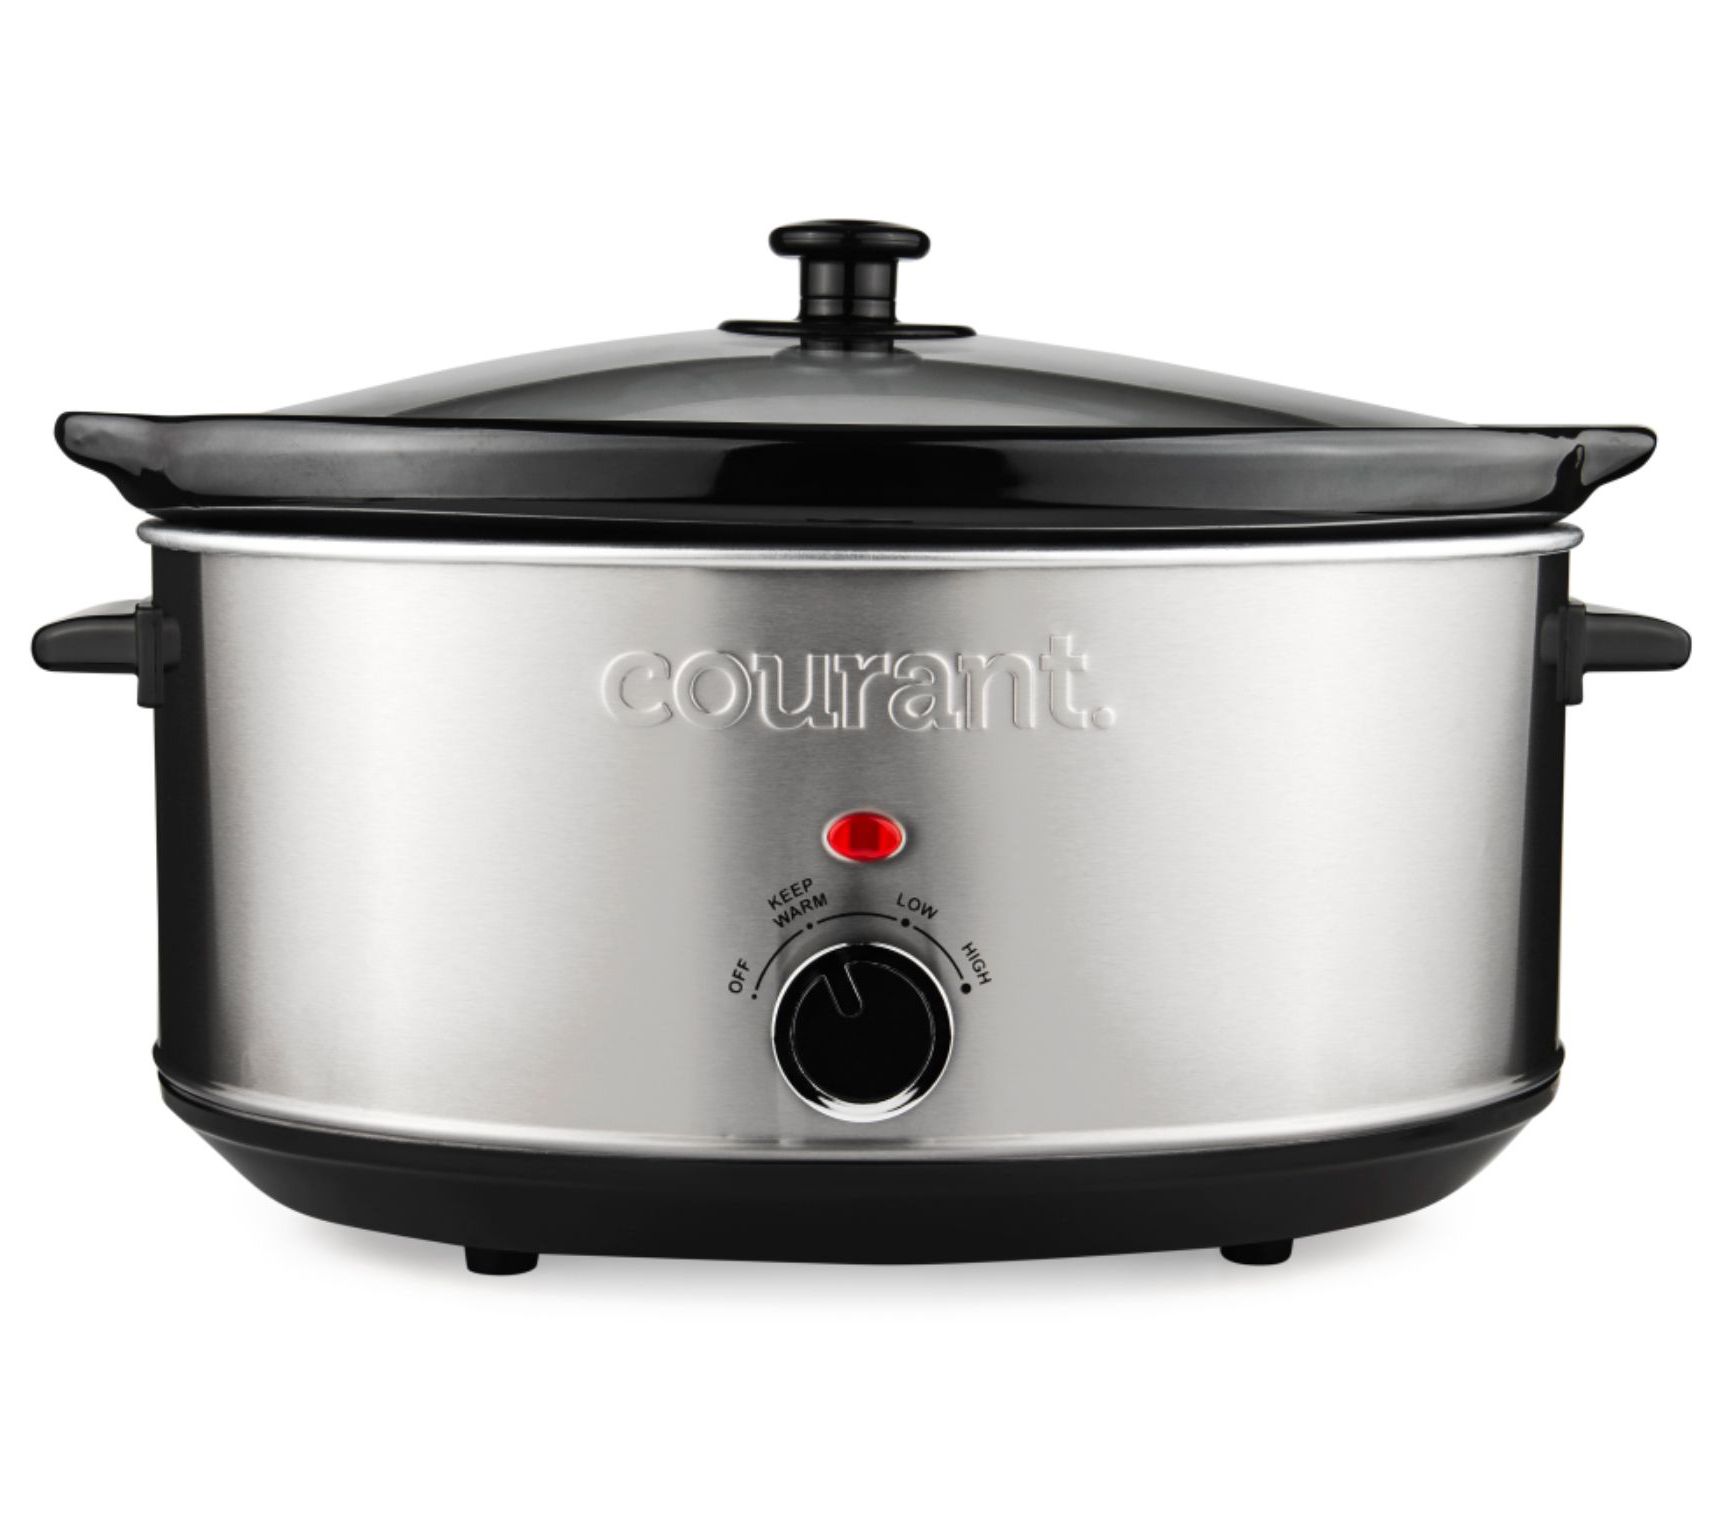 Courant 2.5 Quart Slow Cooker - Black Matte